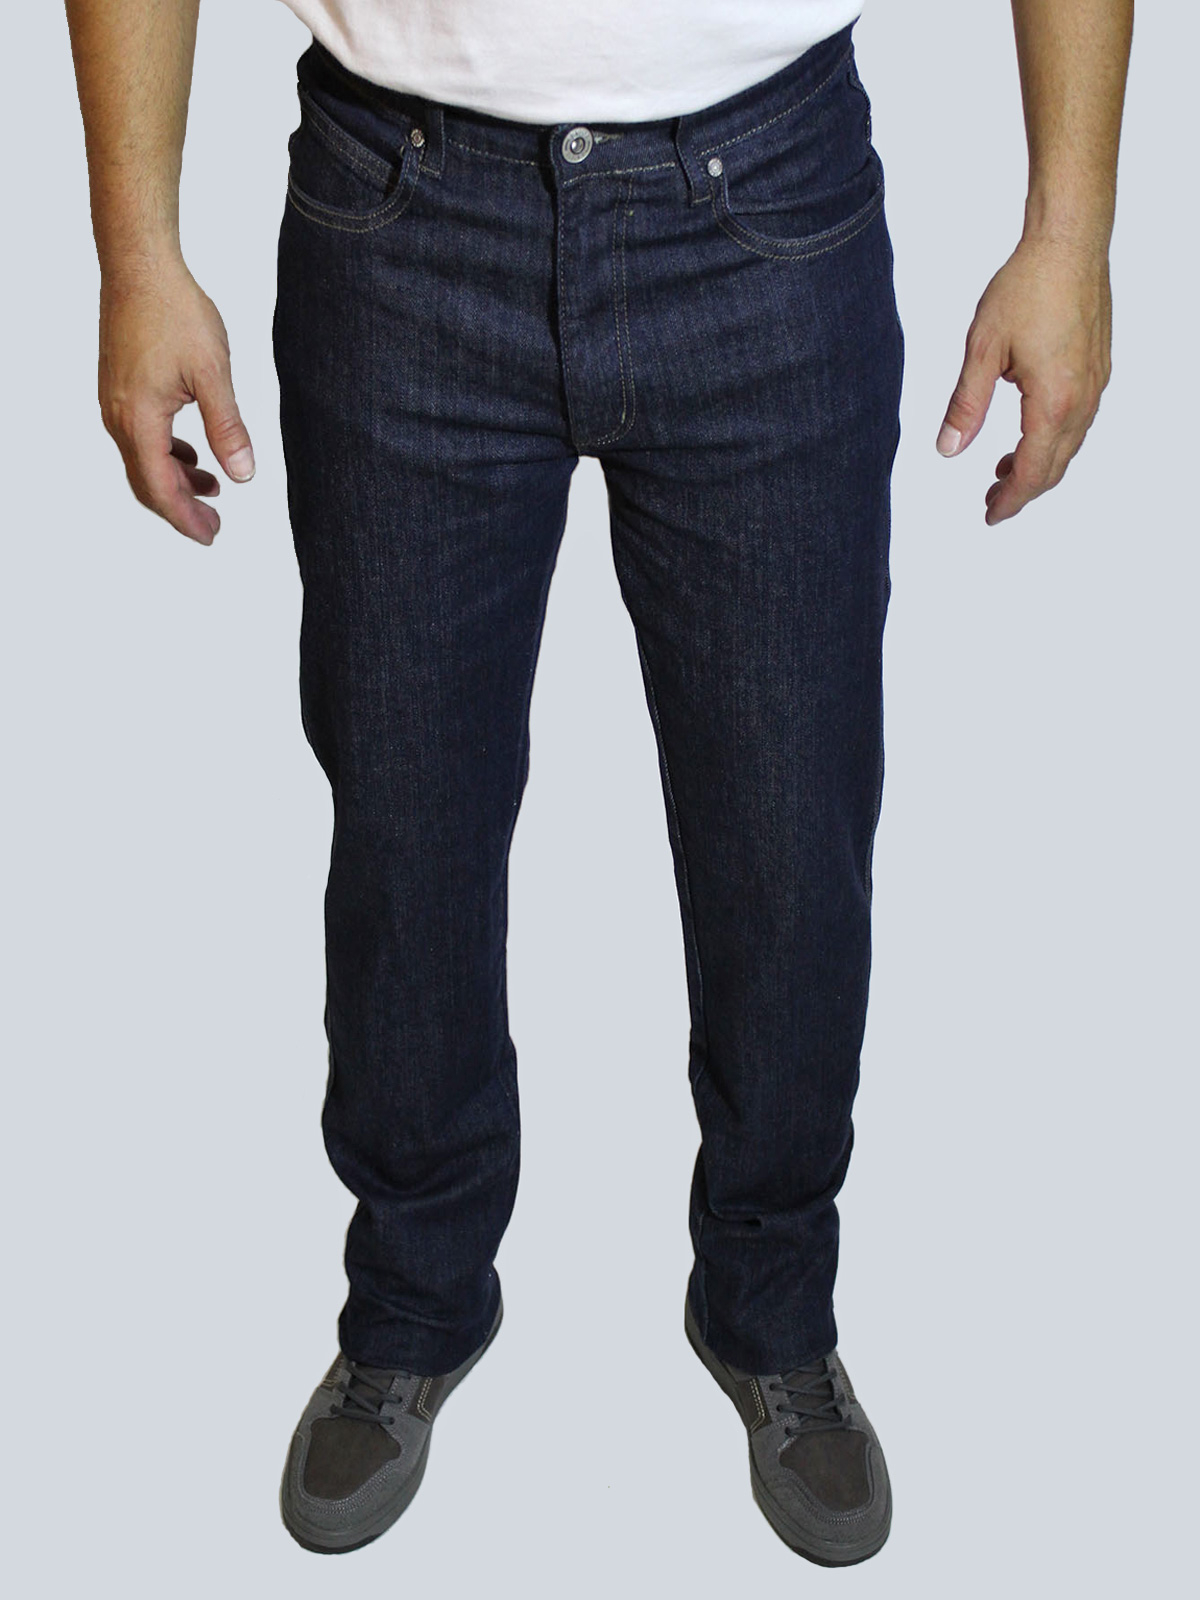 Takhiro pantalons texans d'home bàsics rectes 21120/72 blau fosc